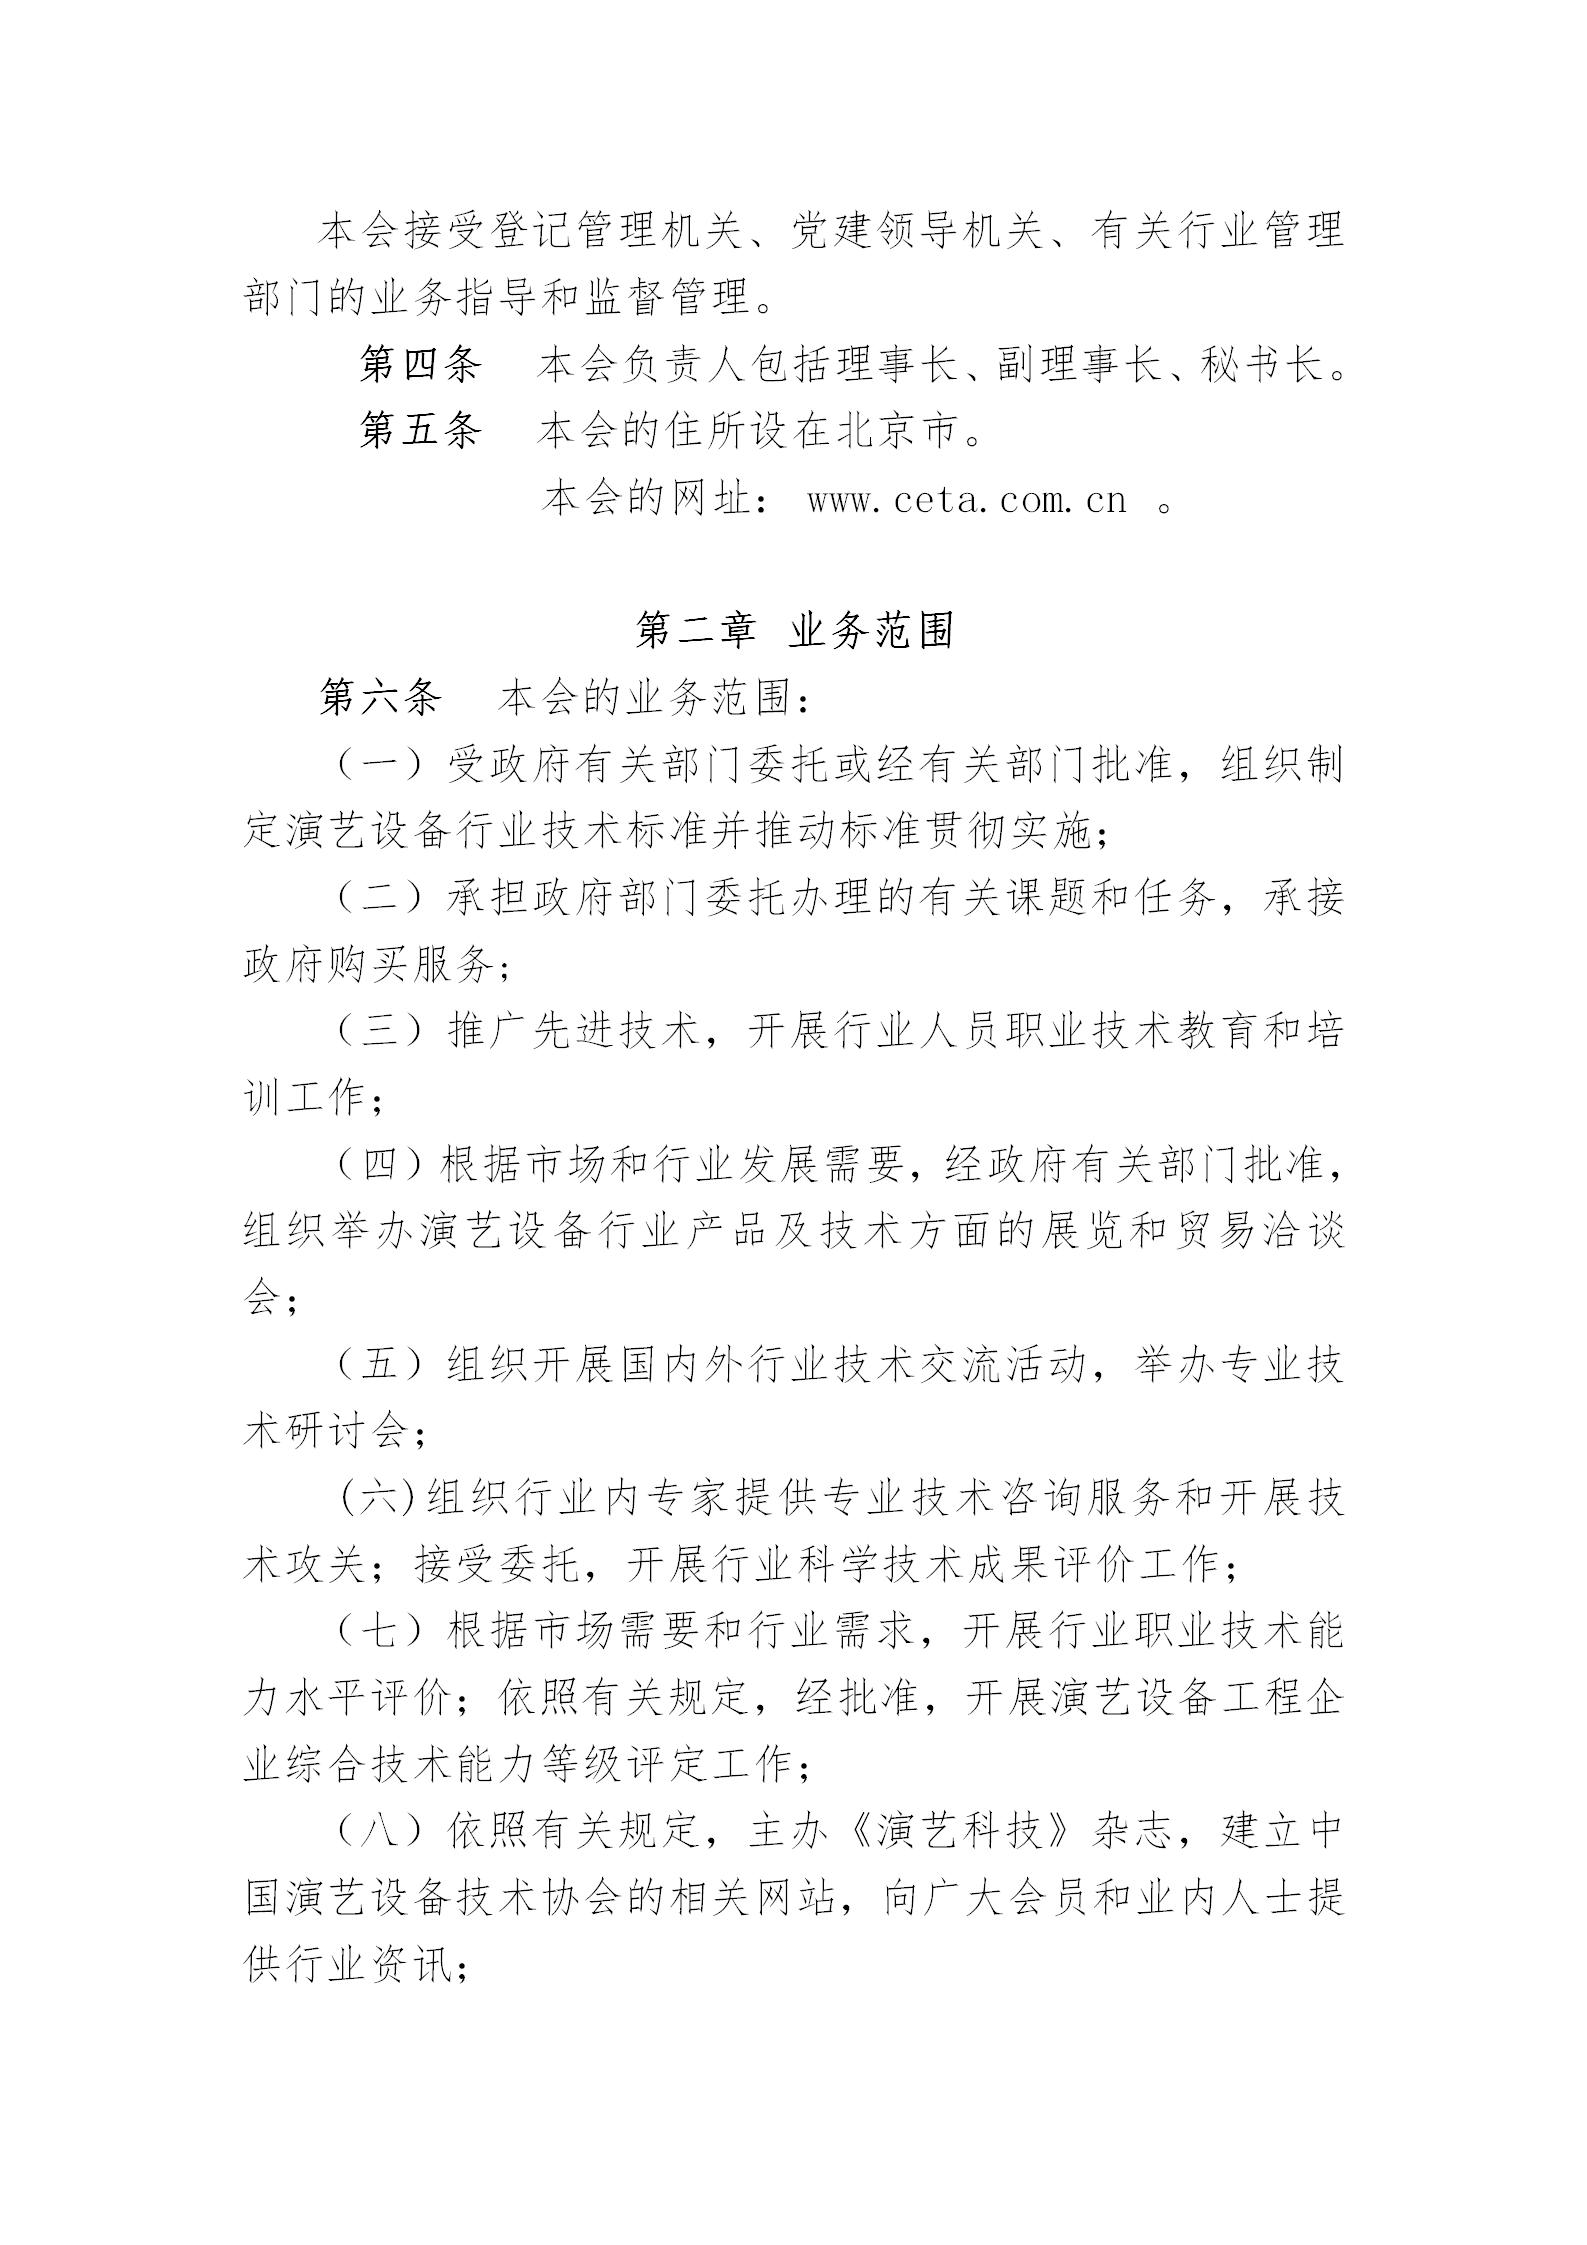 中国演艺设备技术协会章程(定稿)_02.jpg